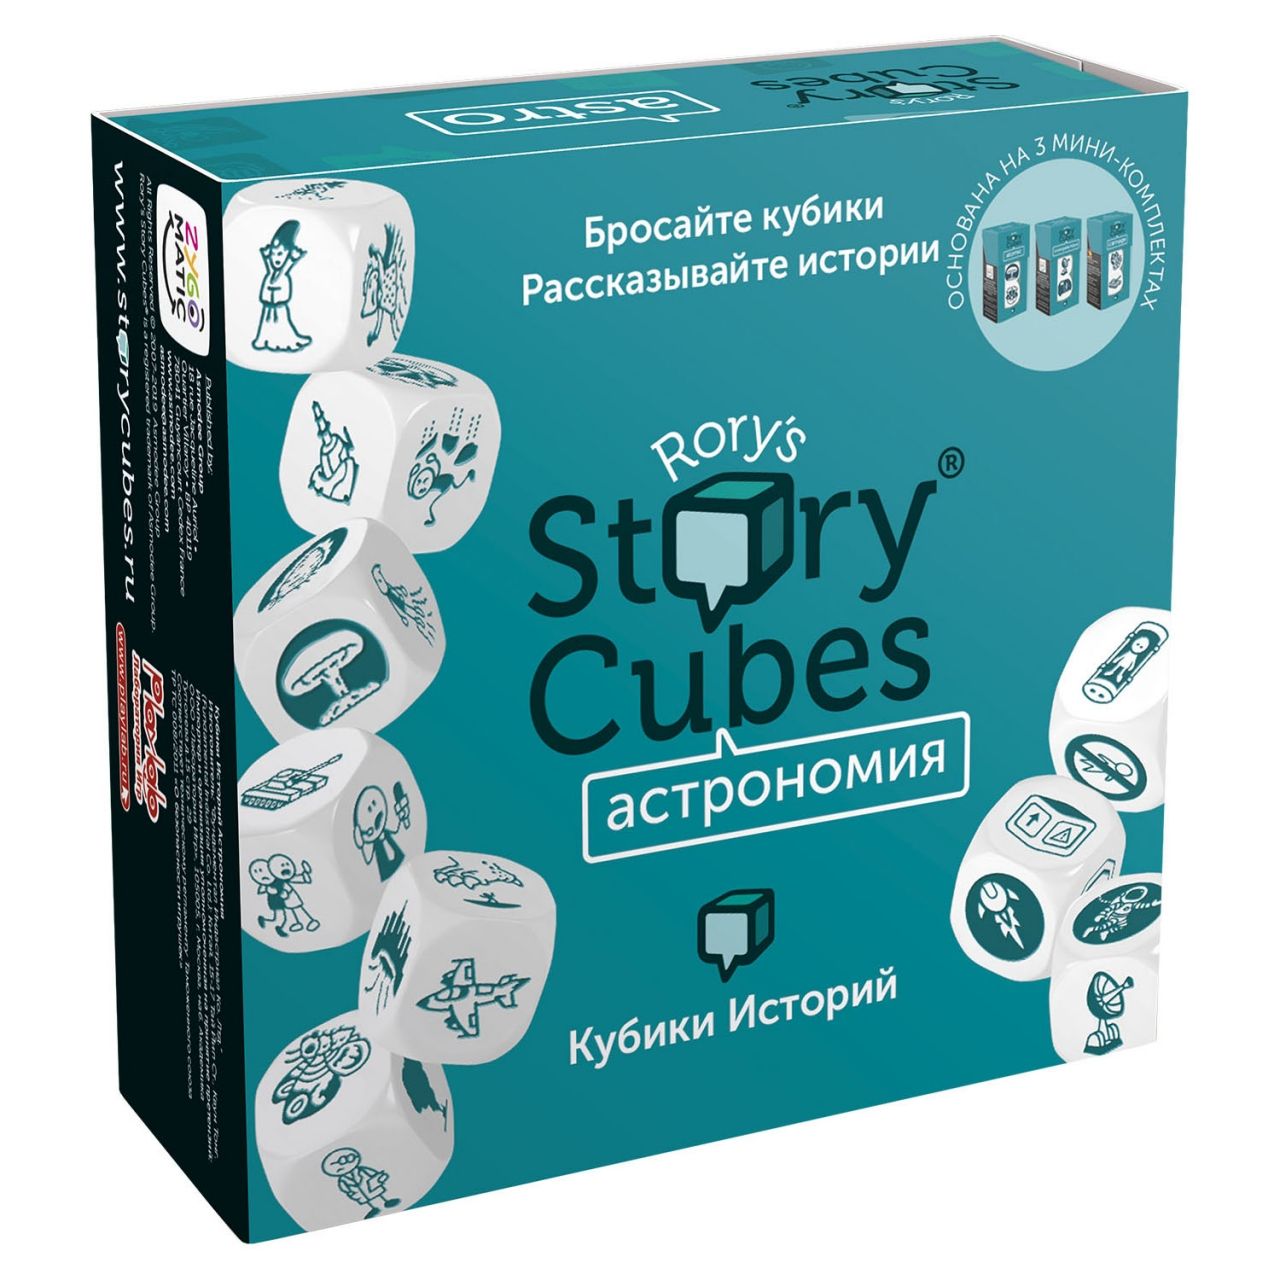 Настольная игра RORYS STORY CUBES RSC31 кубики историй Астрономия rubiks кубики историй original